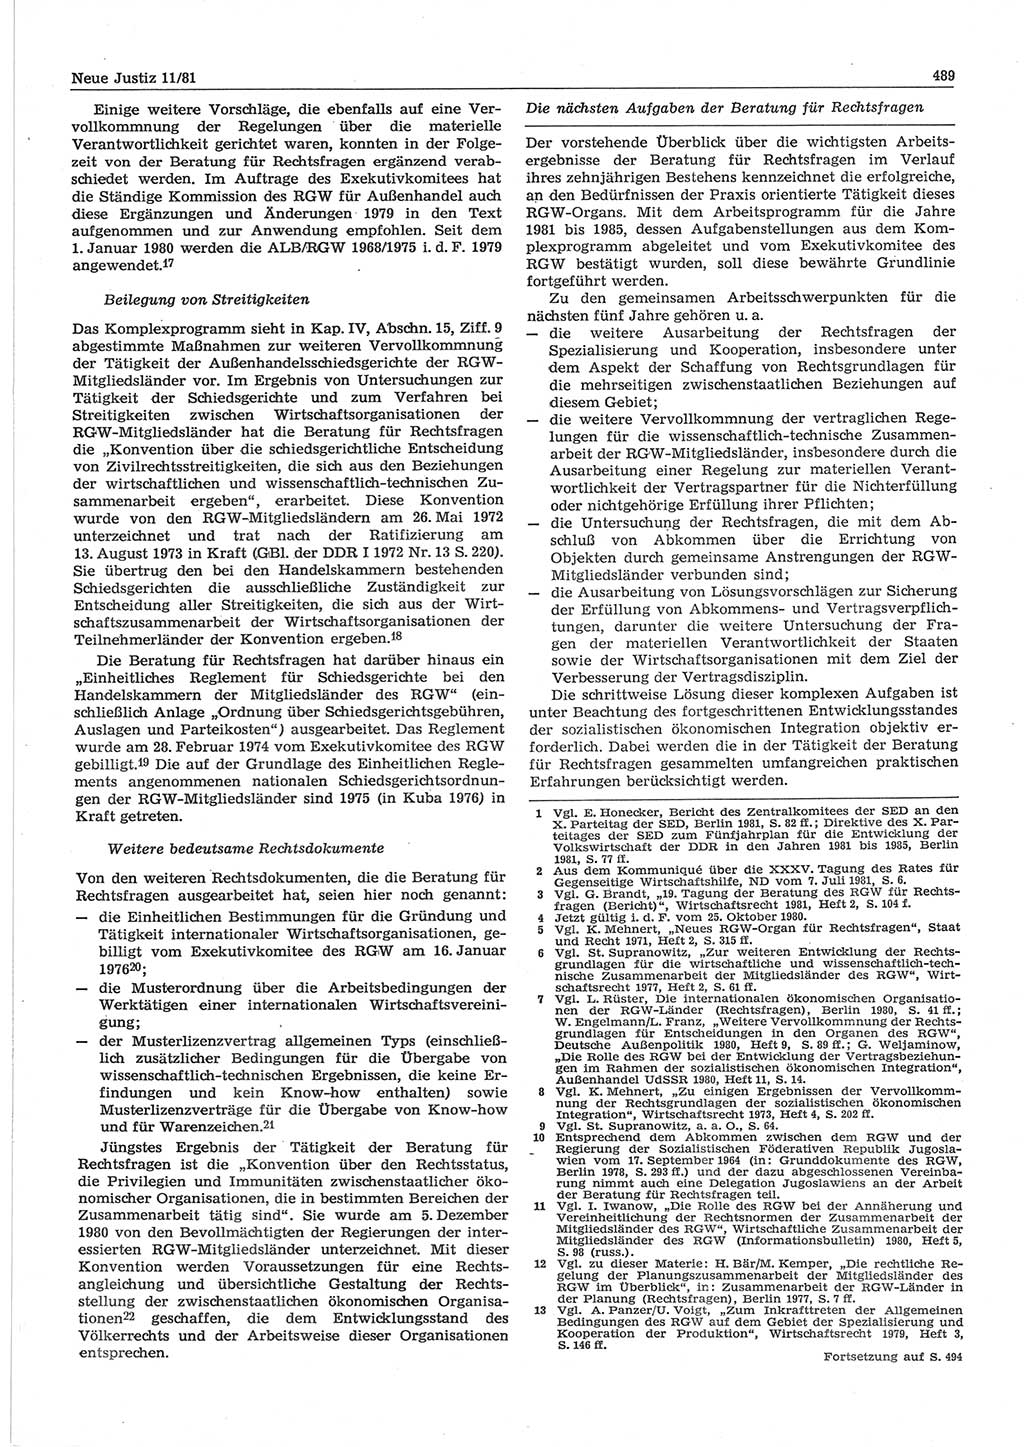 Neue Justiz (NJ), Zeitschrift für sozialistisches Recht und Gesetzlichkeit [Deutsche Demokratische Republik (DDR)], 35. Jahrgang 1981, Seite 489 (NJ DDR 1981, S. 489)